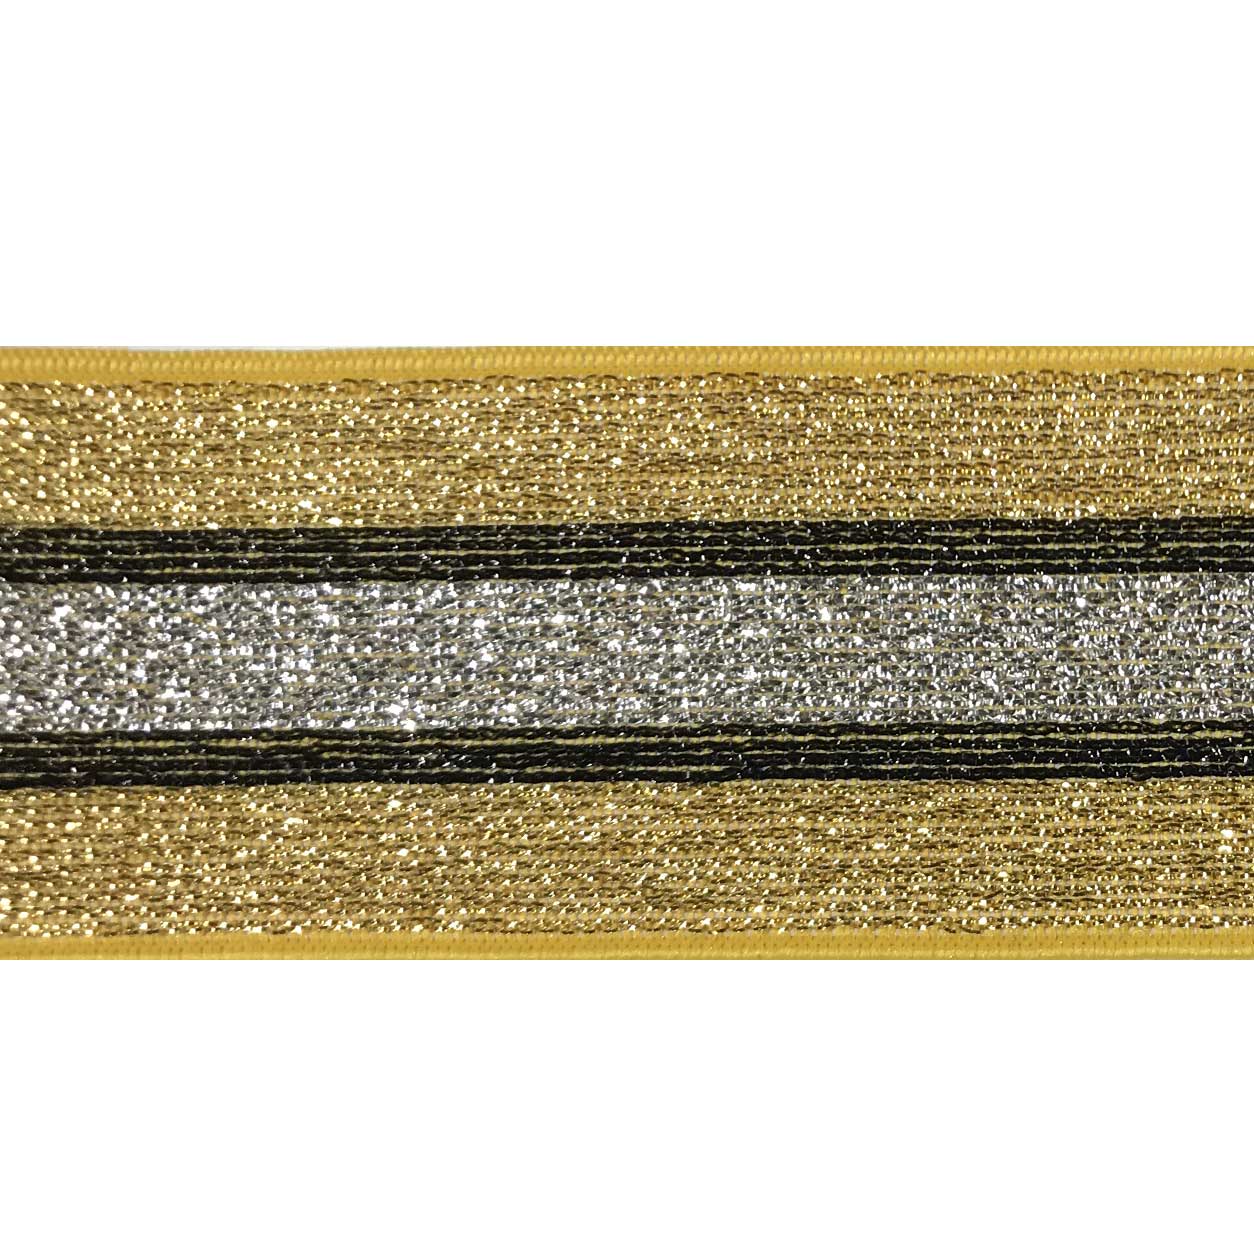 elastico decorativo oro righe nere e argento